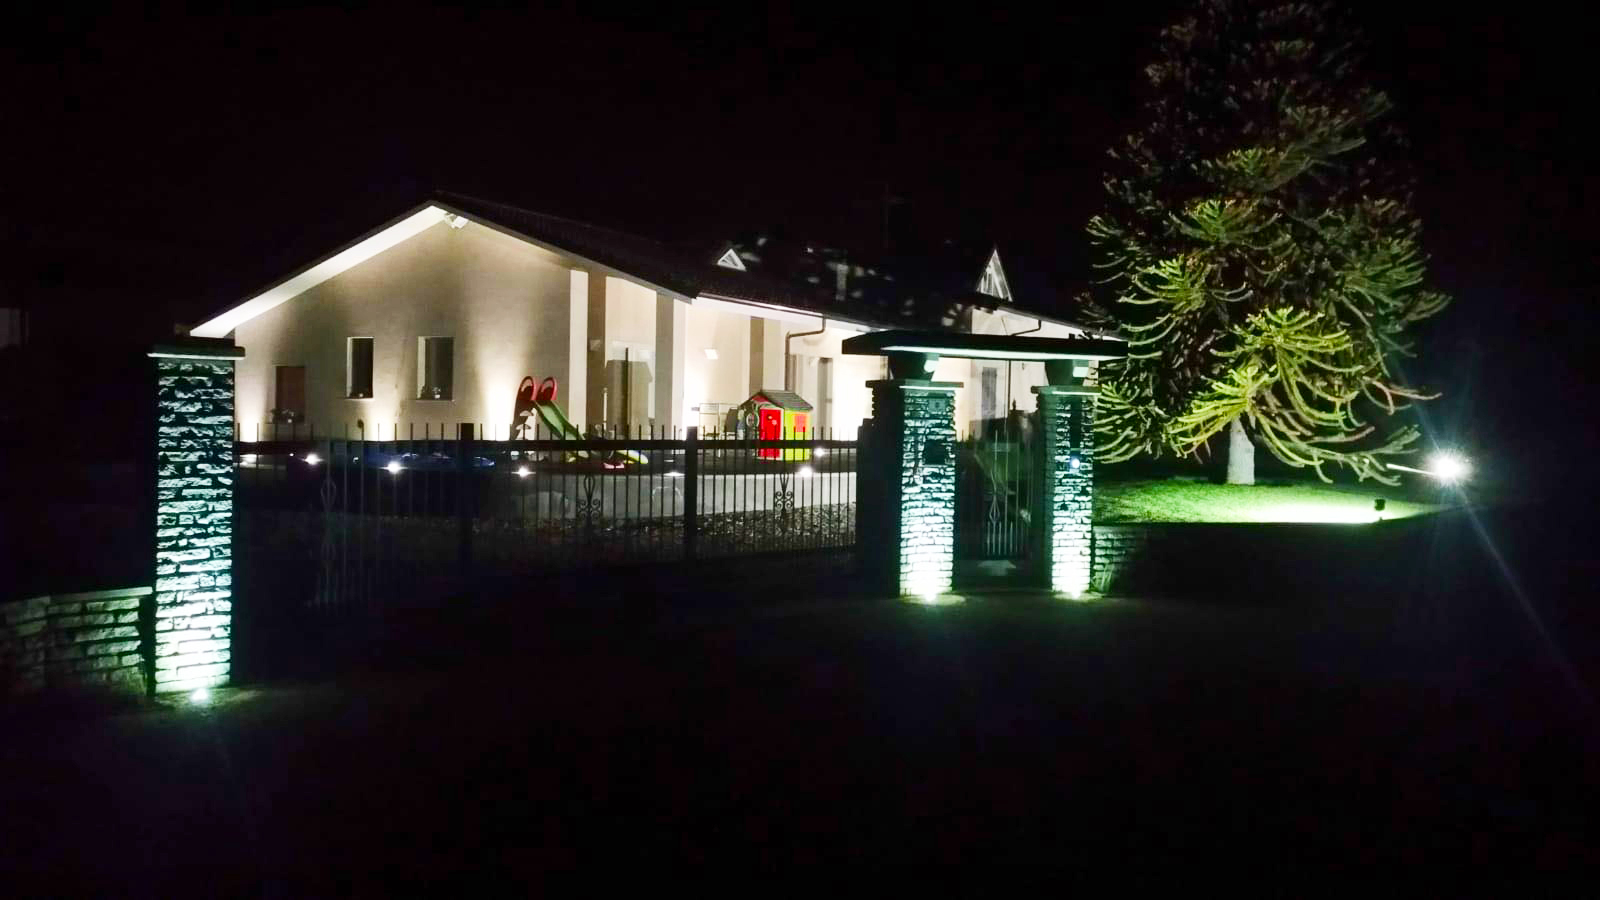 Dettagli Illuminazione a led dell'area esterna di una villa a Manta, Cuneo